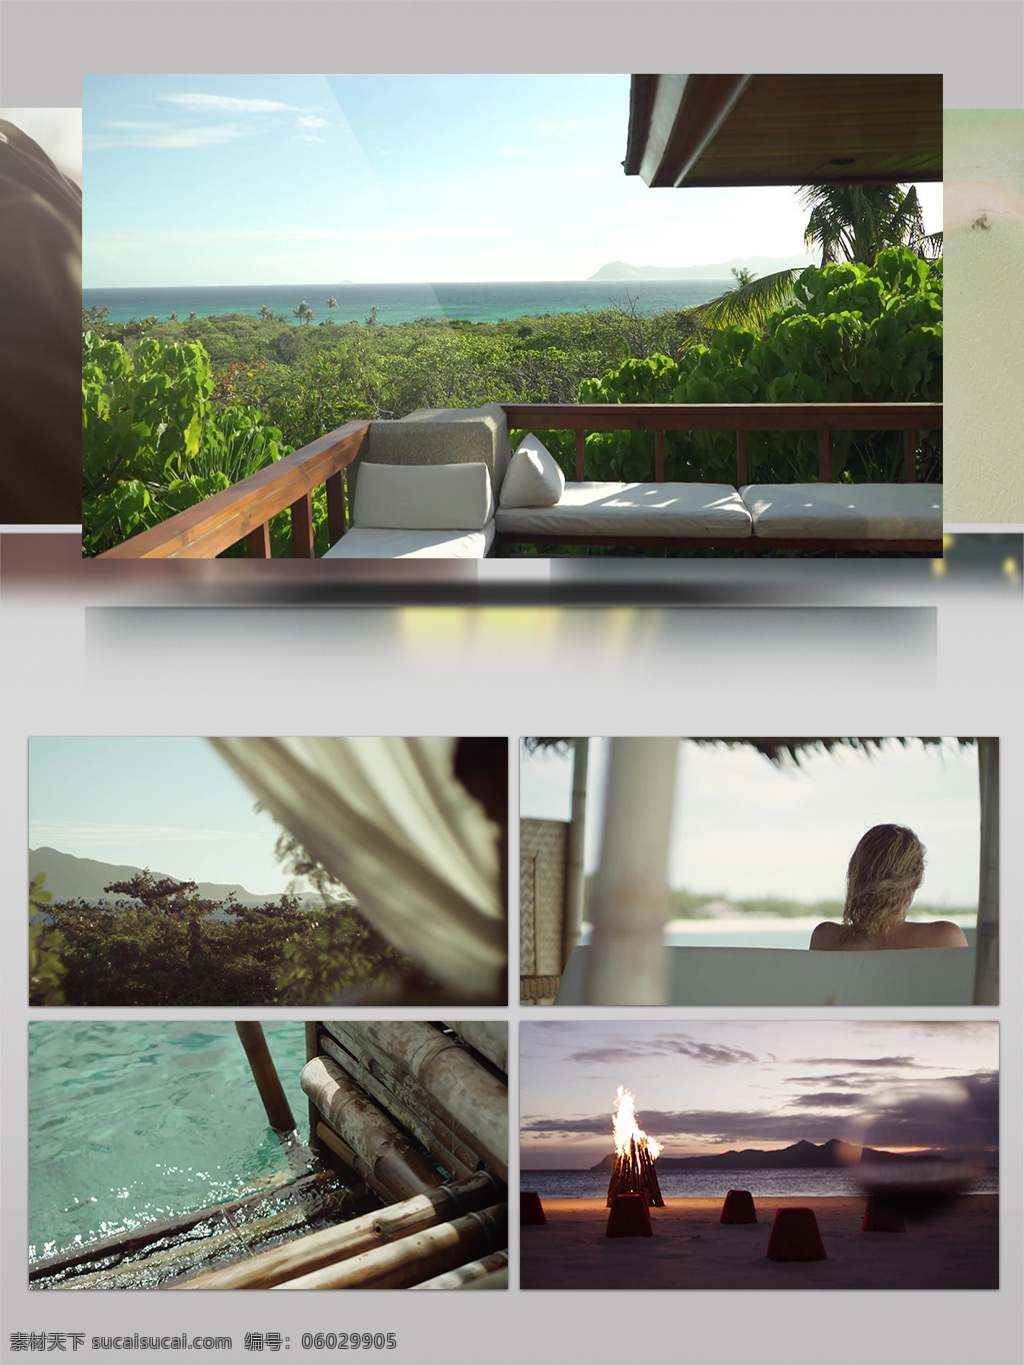 菲律宾 高档 海滩 度假村 旅游 宣传片 风景 休闲 娱乐 海景